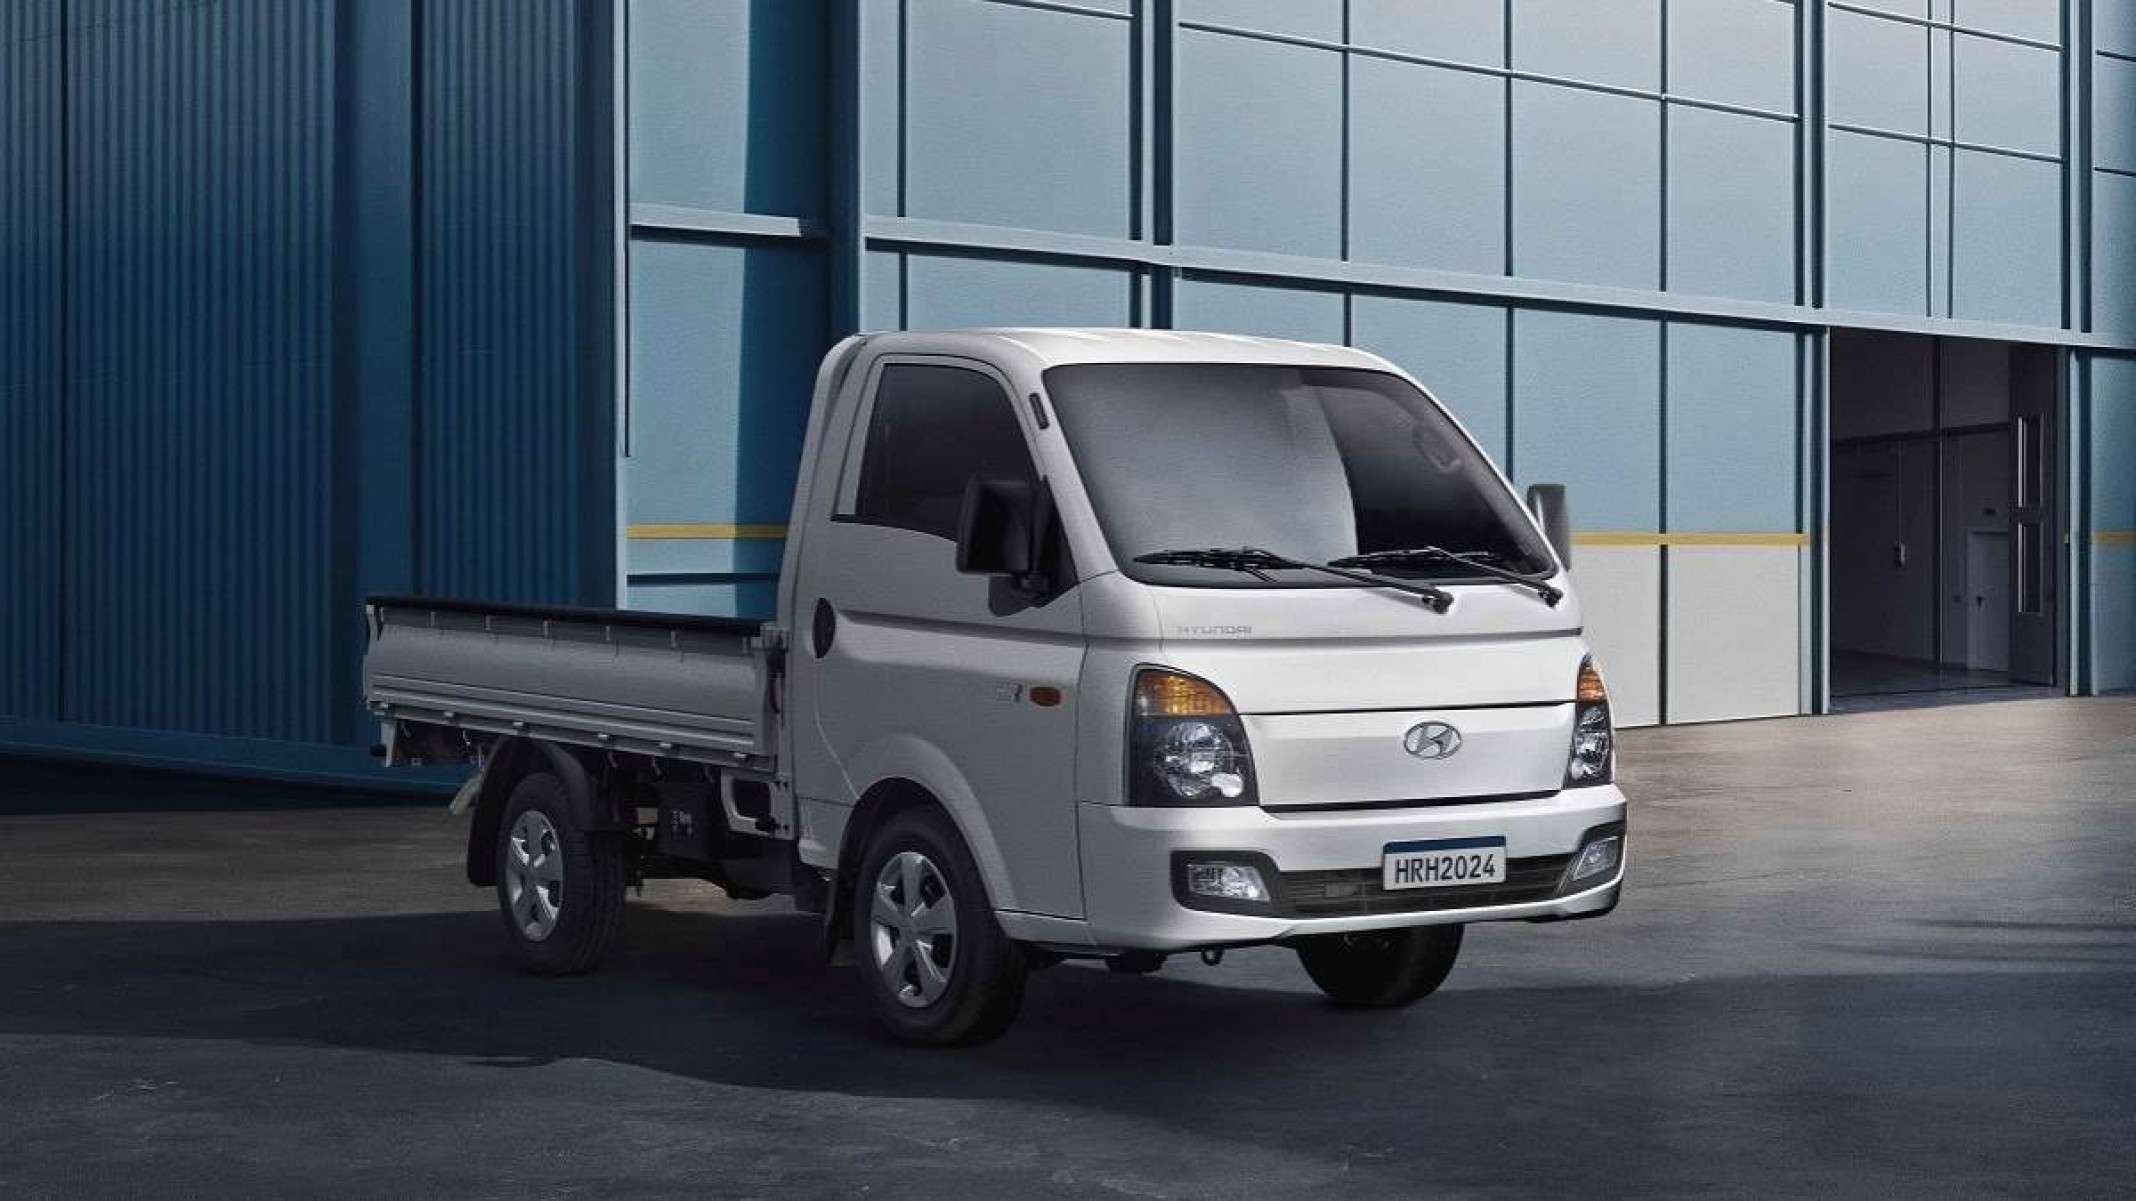 Hyundai HR 2025: caminhão leve já está disponível nas concessionárias